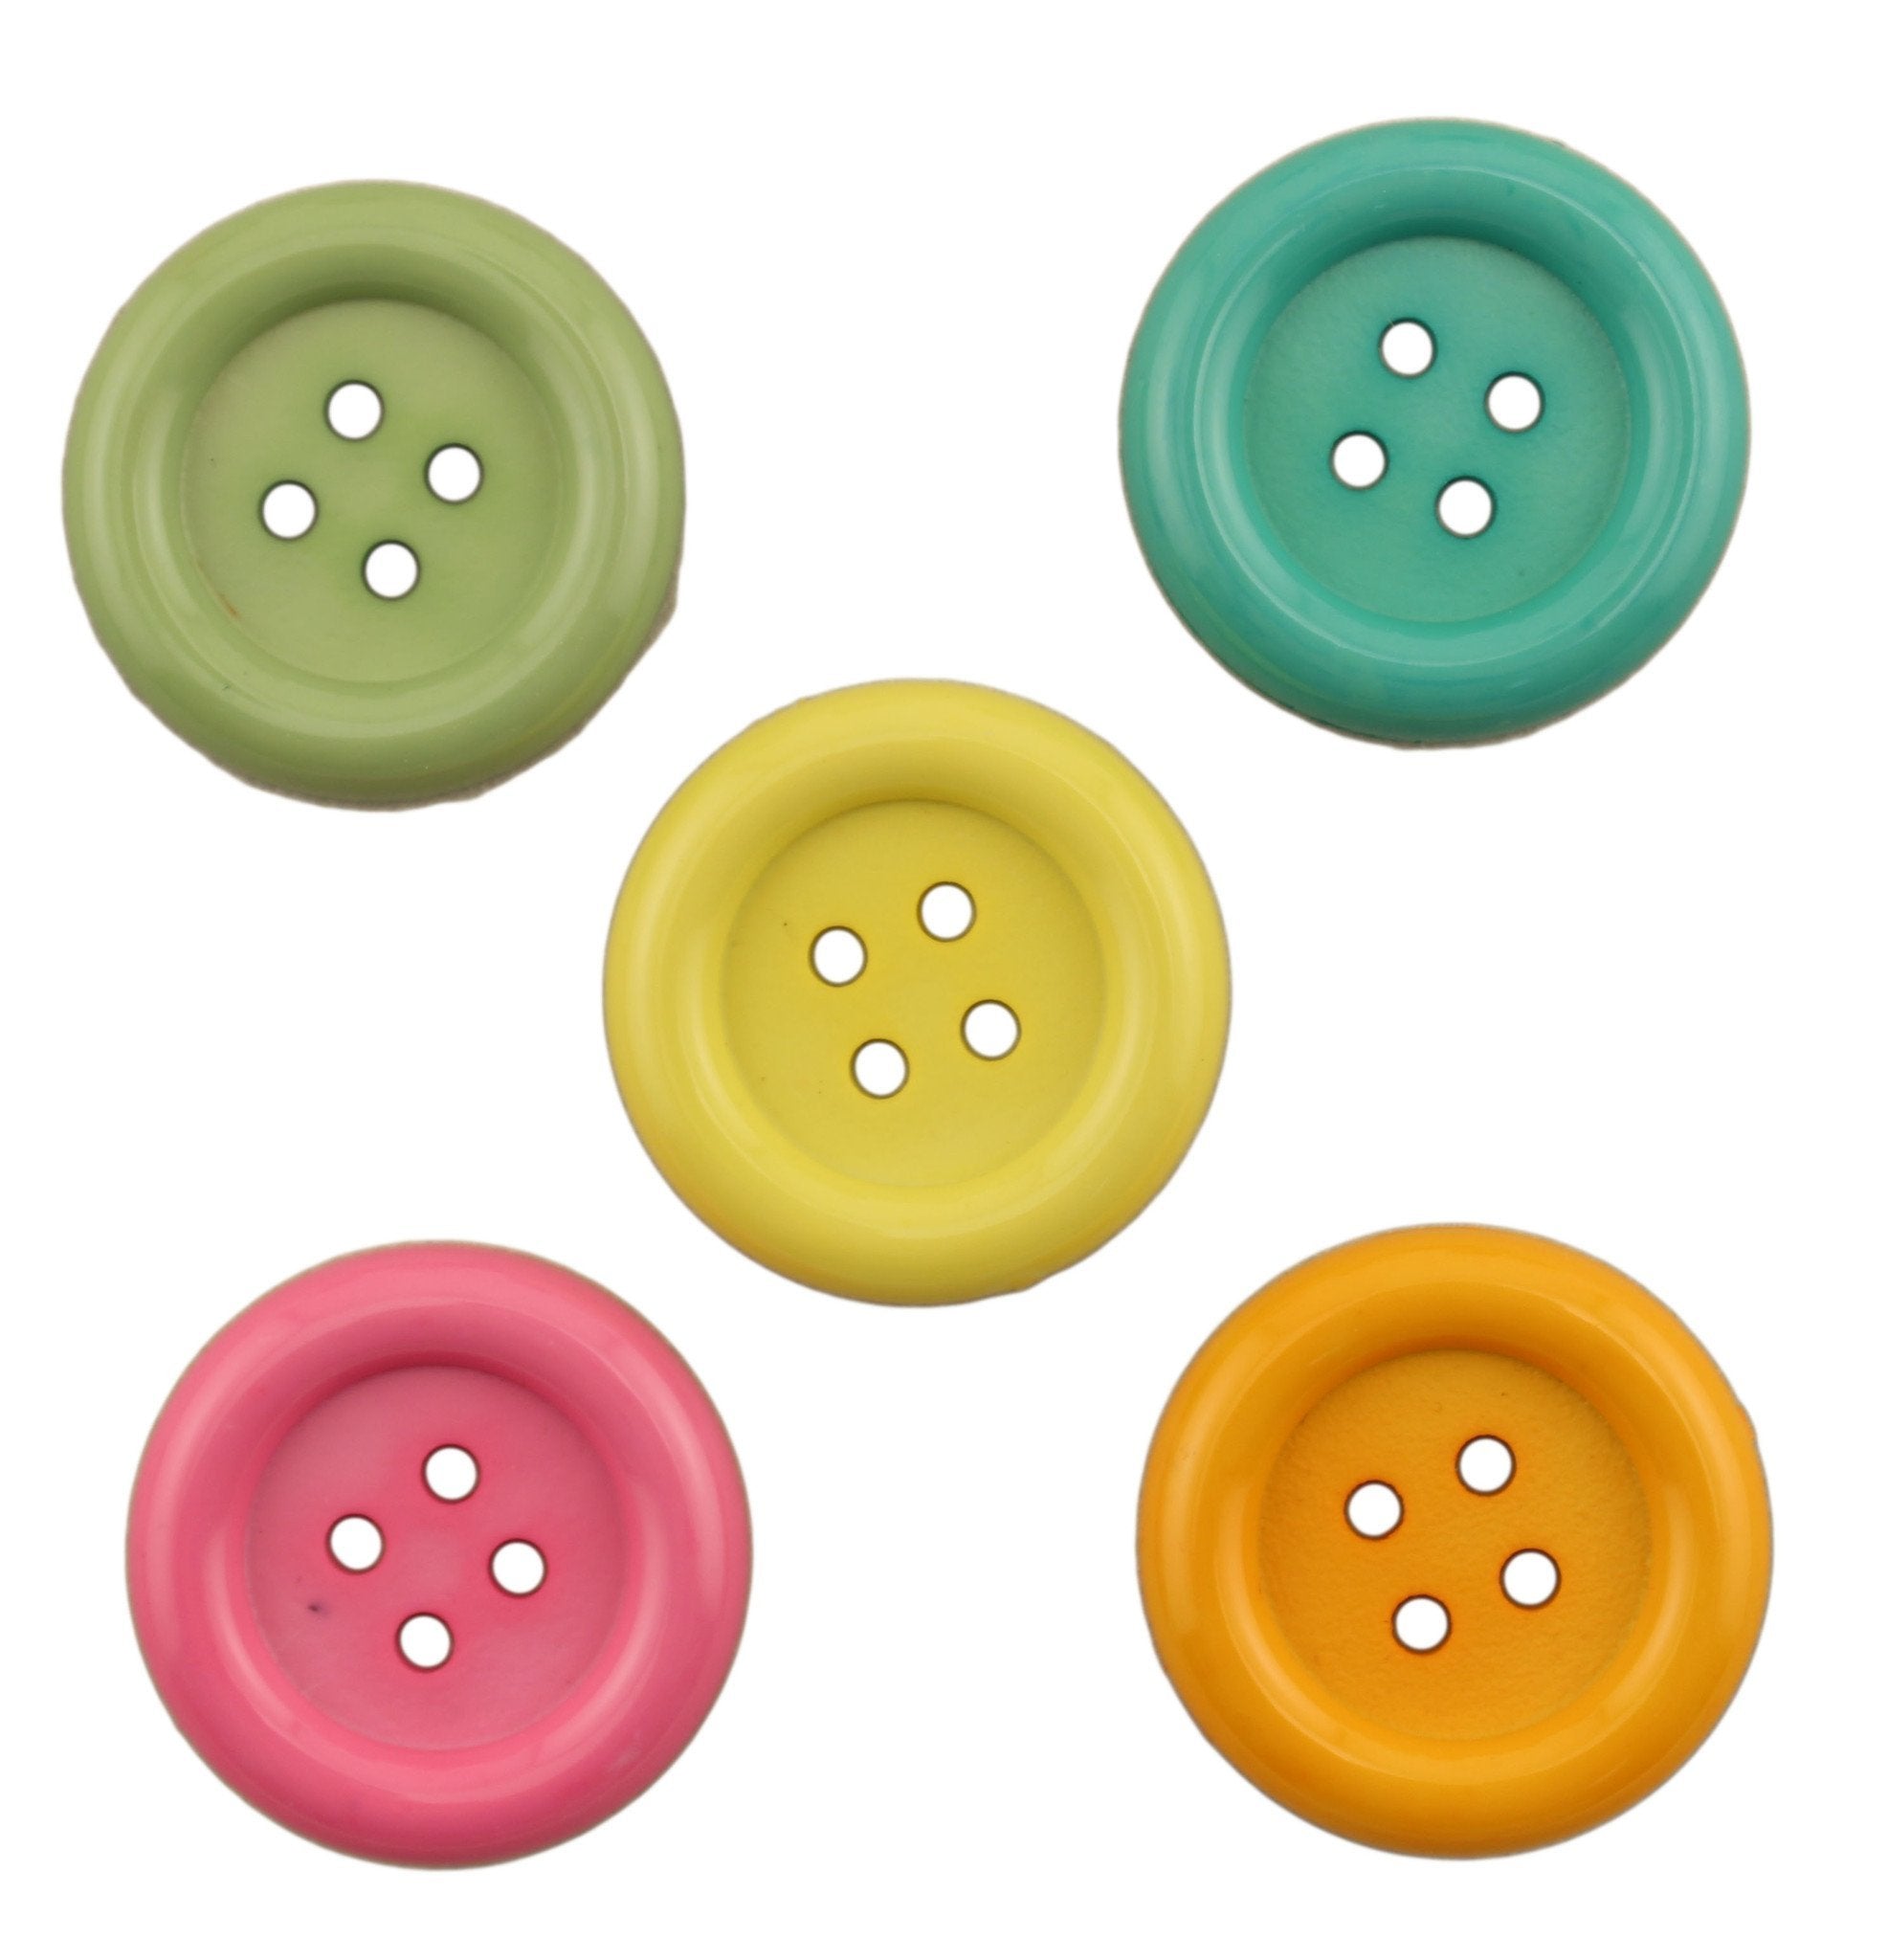 Buttons Galore Button Bonanza .5lb Assorted Buttons-nav, Blue